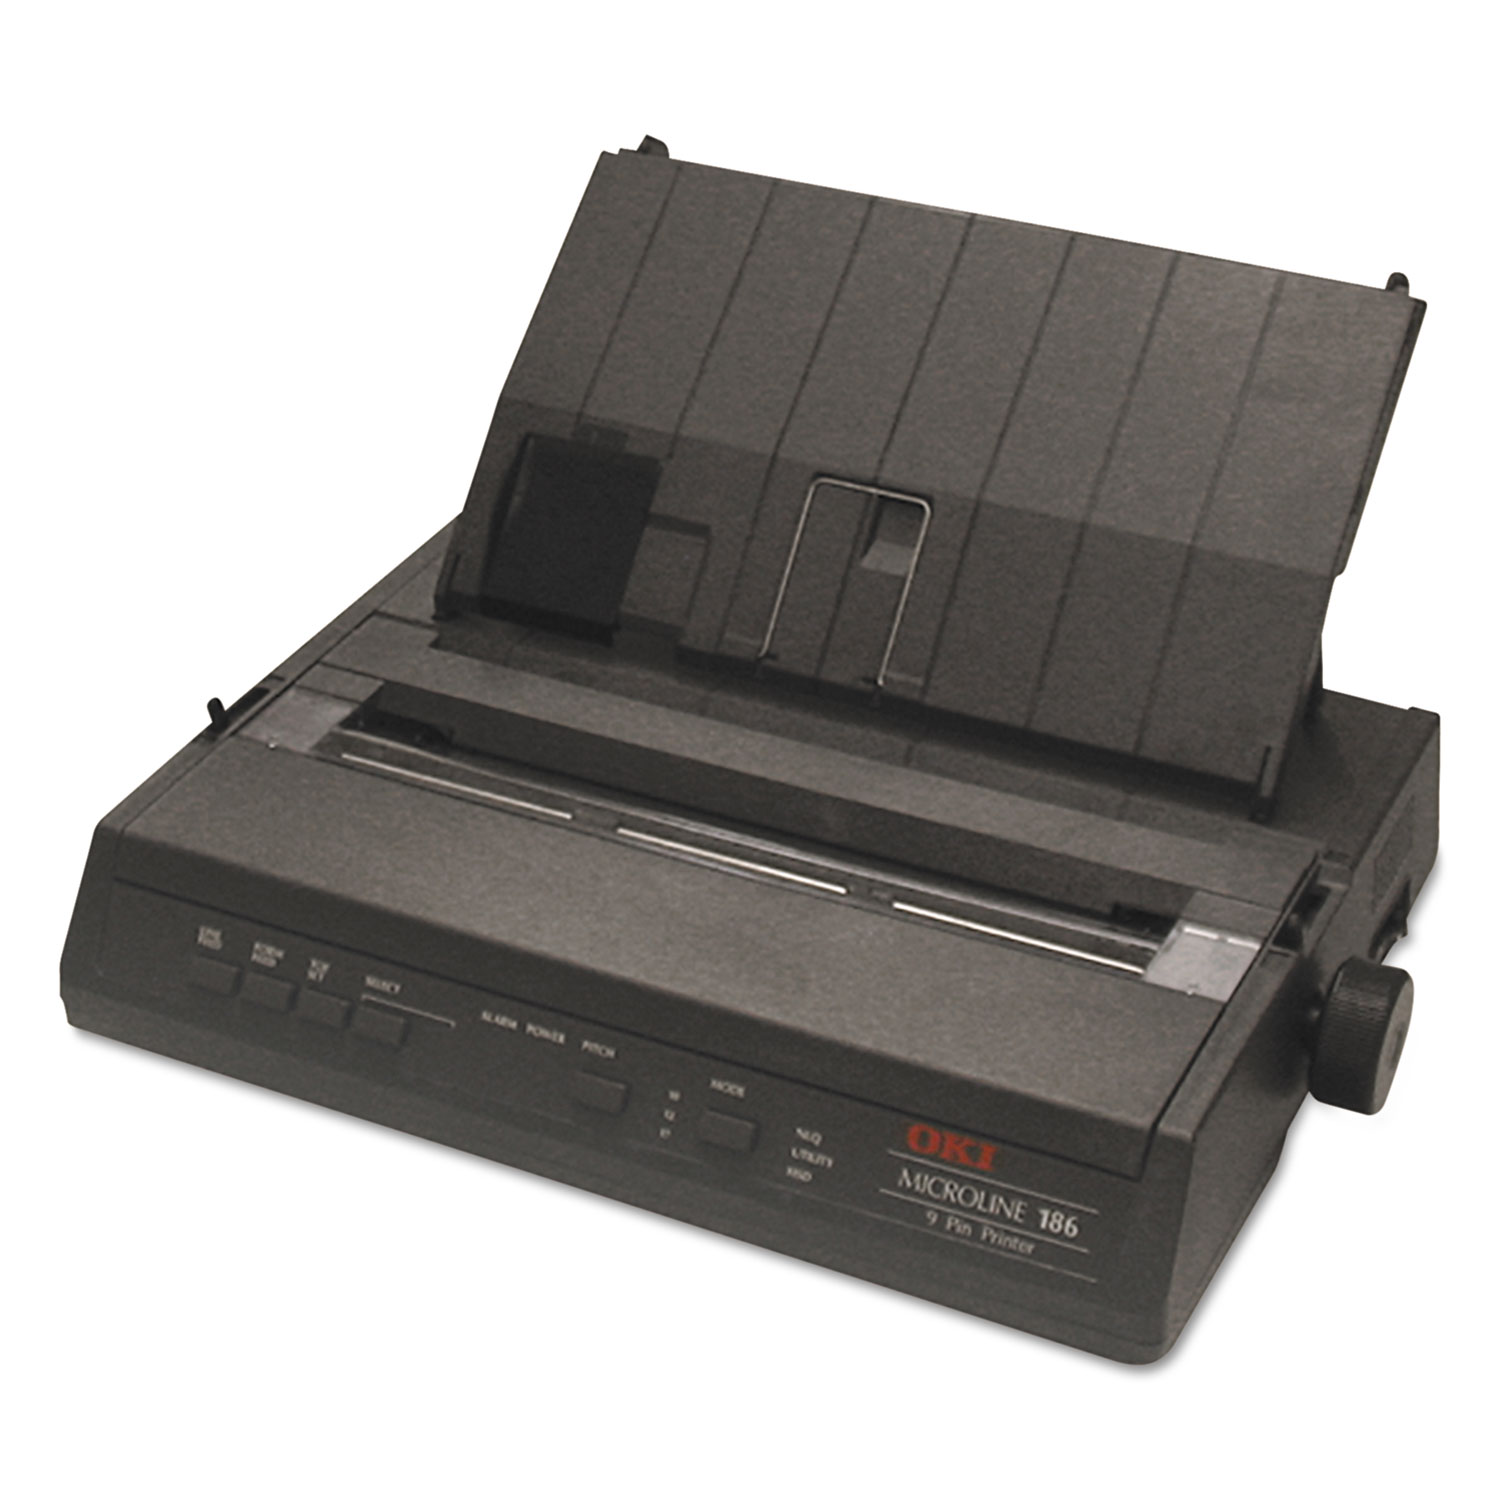 Microline 186 Parallel 9-Pin Dot Matrix Printer, Black